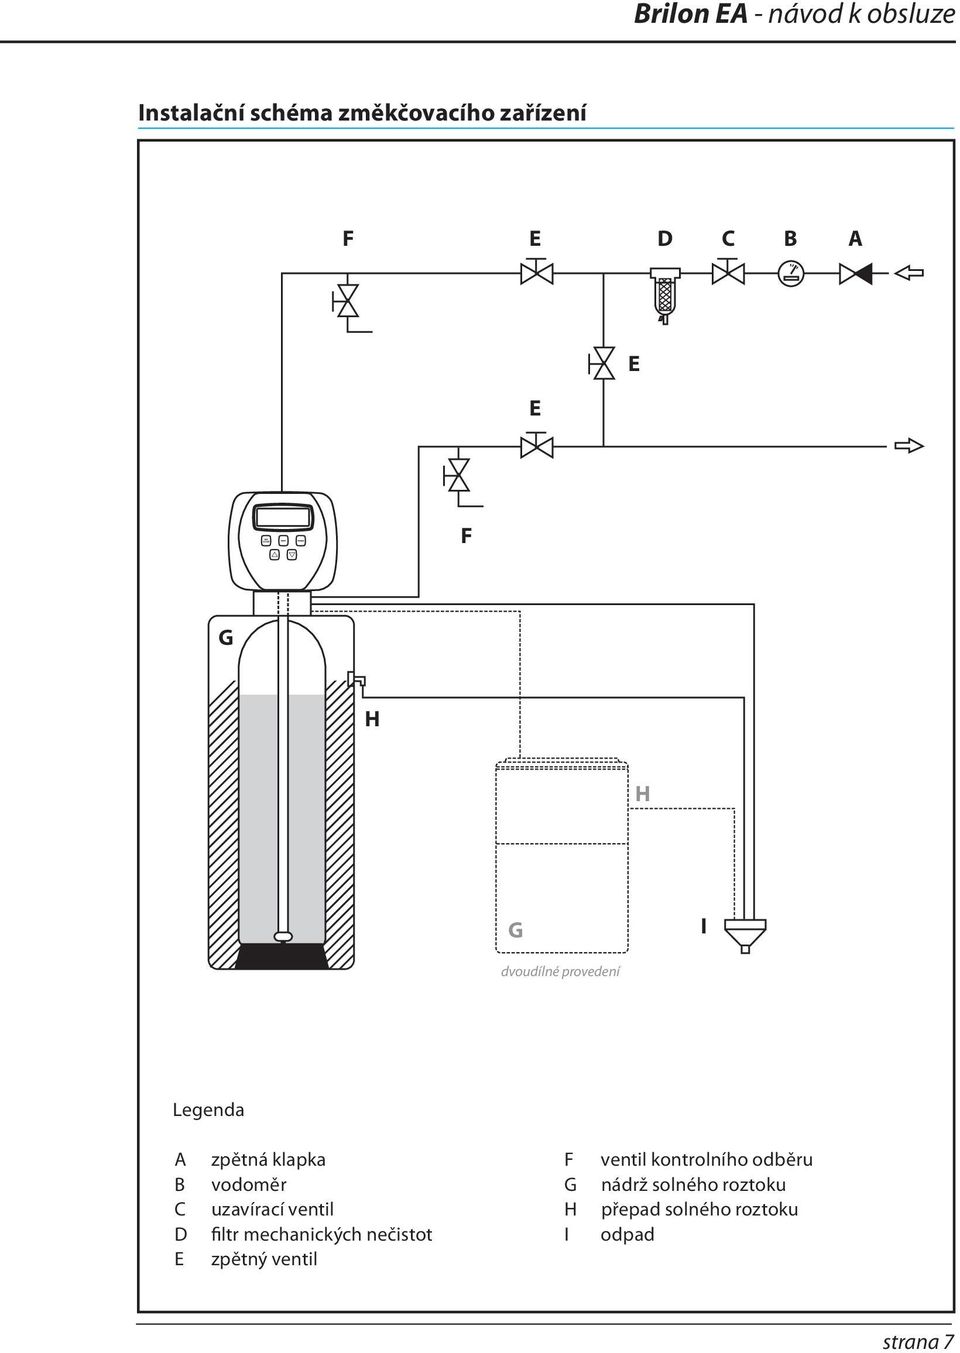 vodoměr uzavírací ventil filtr mechanických nečistot zpětný ventil F G H I